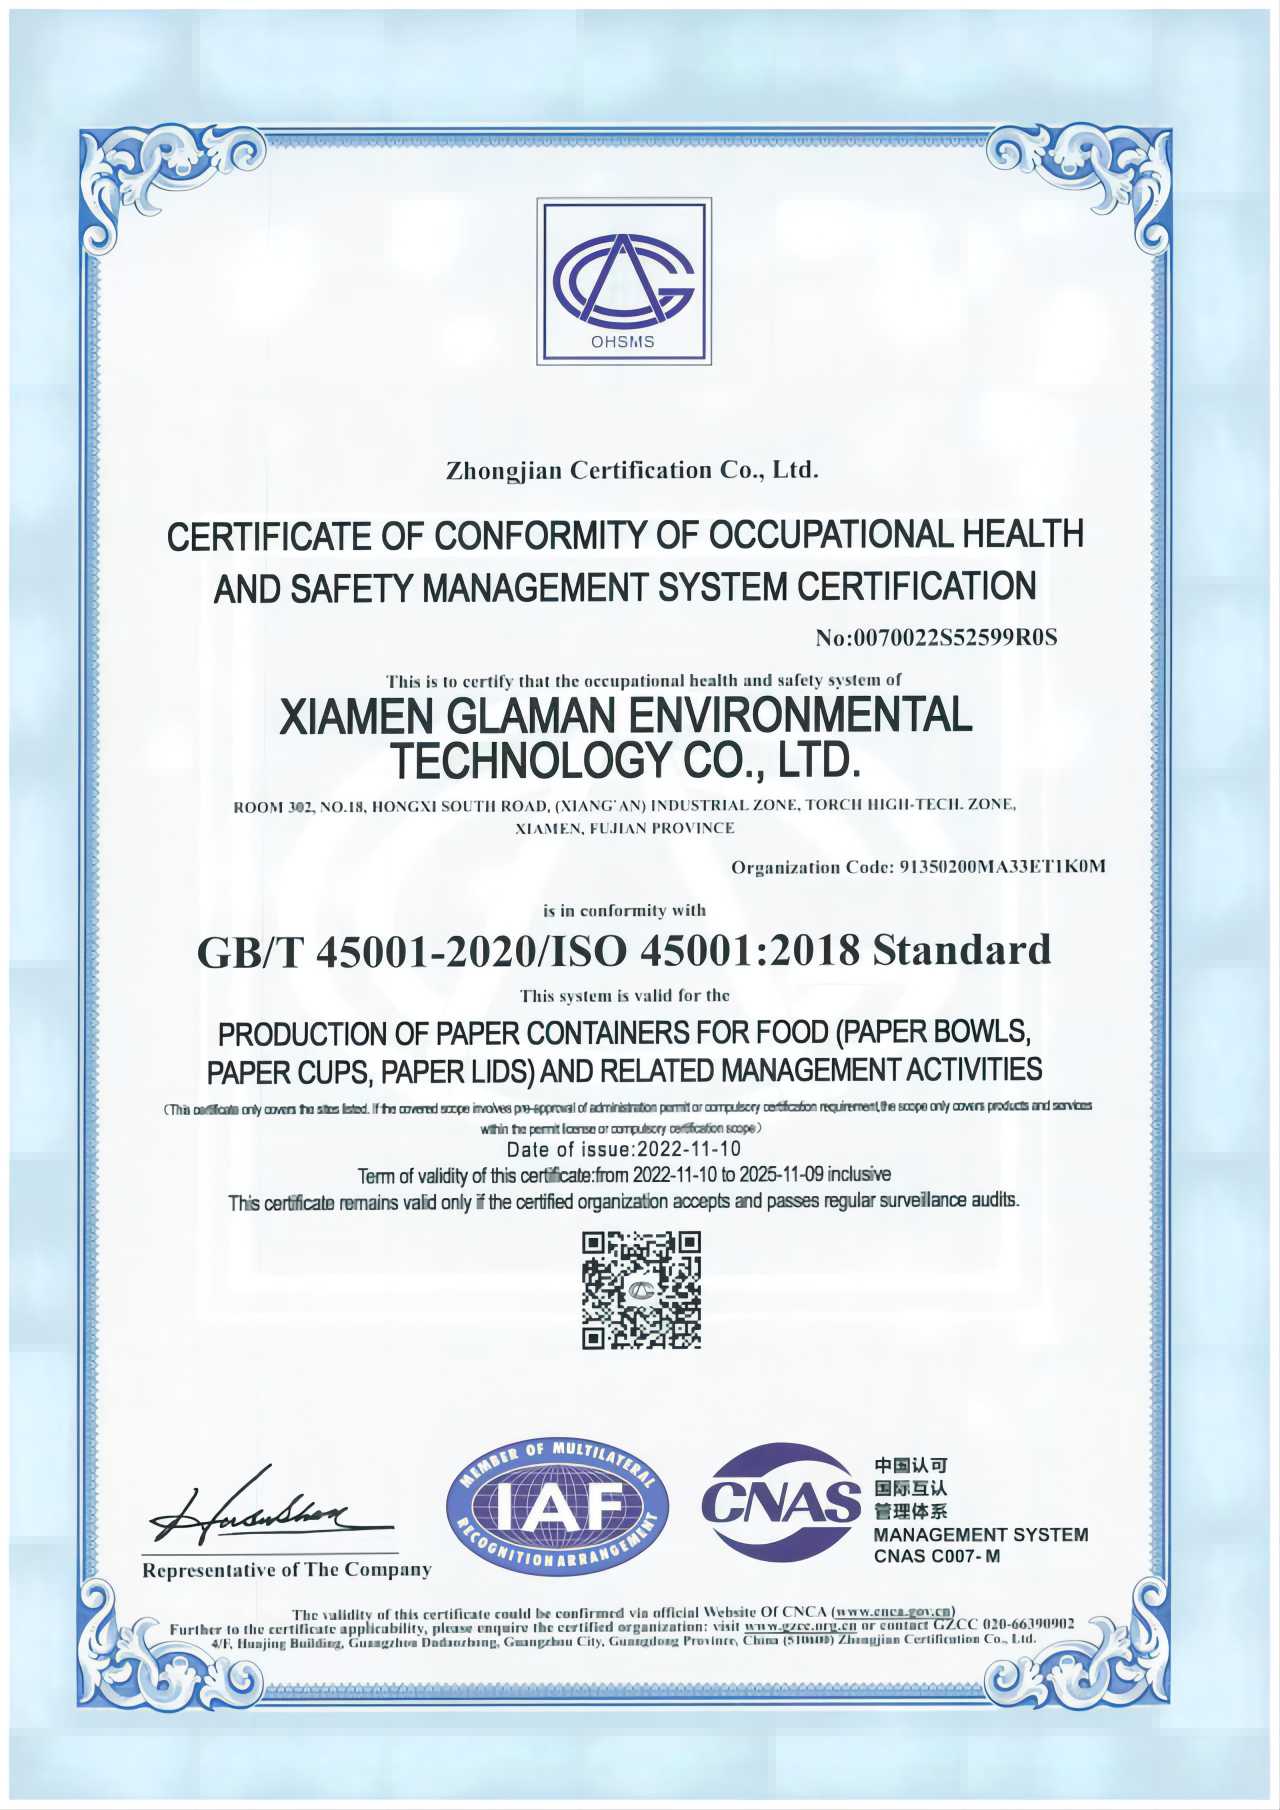 La certification ISO45001
        